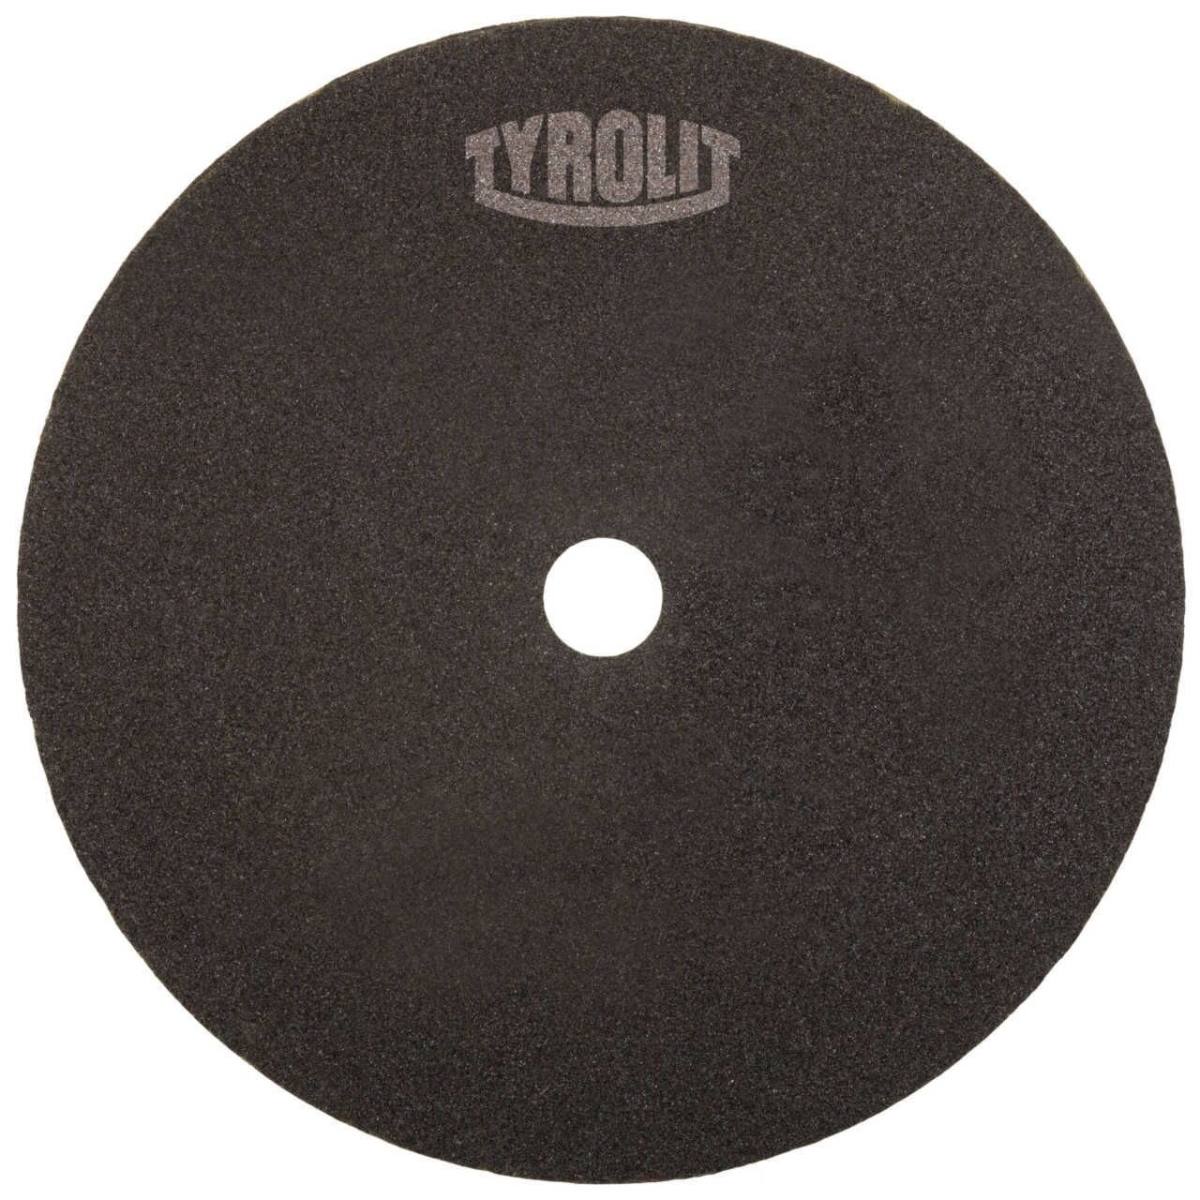 TYROLIT Disque à tronçonner pour le tronçonnage et l'affûtage de la scie DxTxH 120x2x51 Pour acier et HSS, forme : 41N - version droite (disque à tronçonner sans tissu), Art. 88461